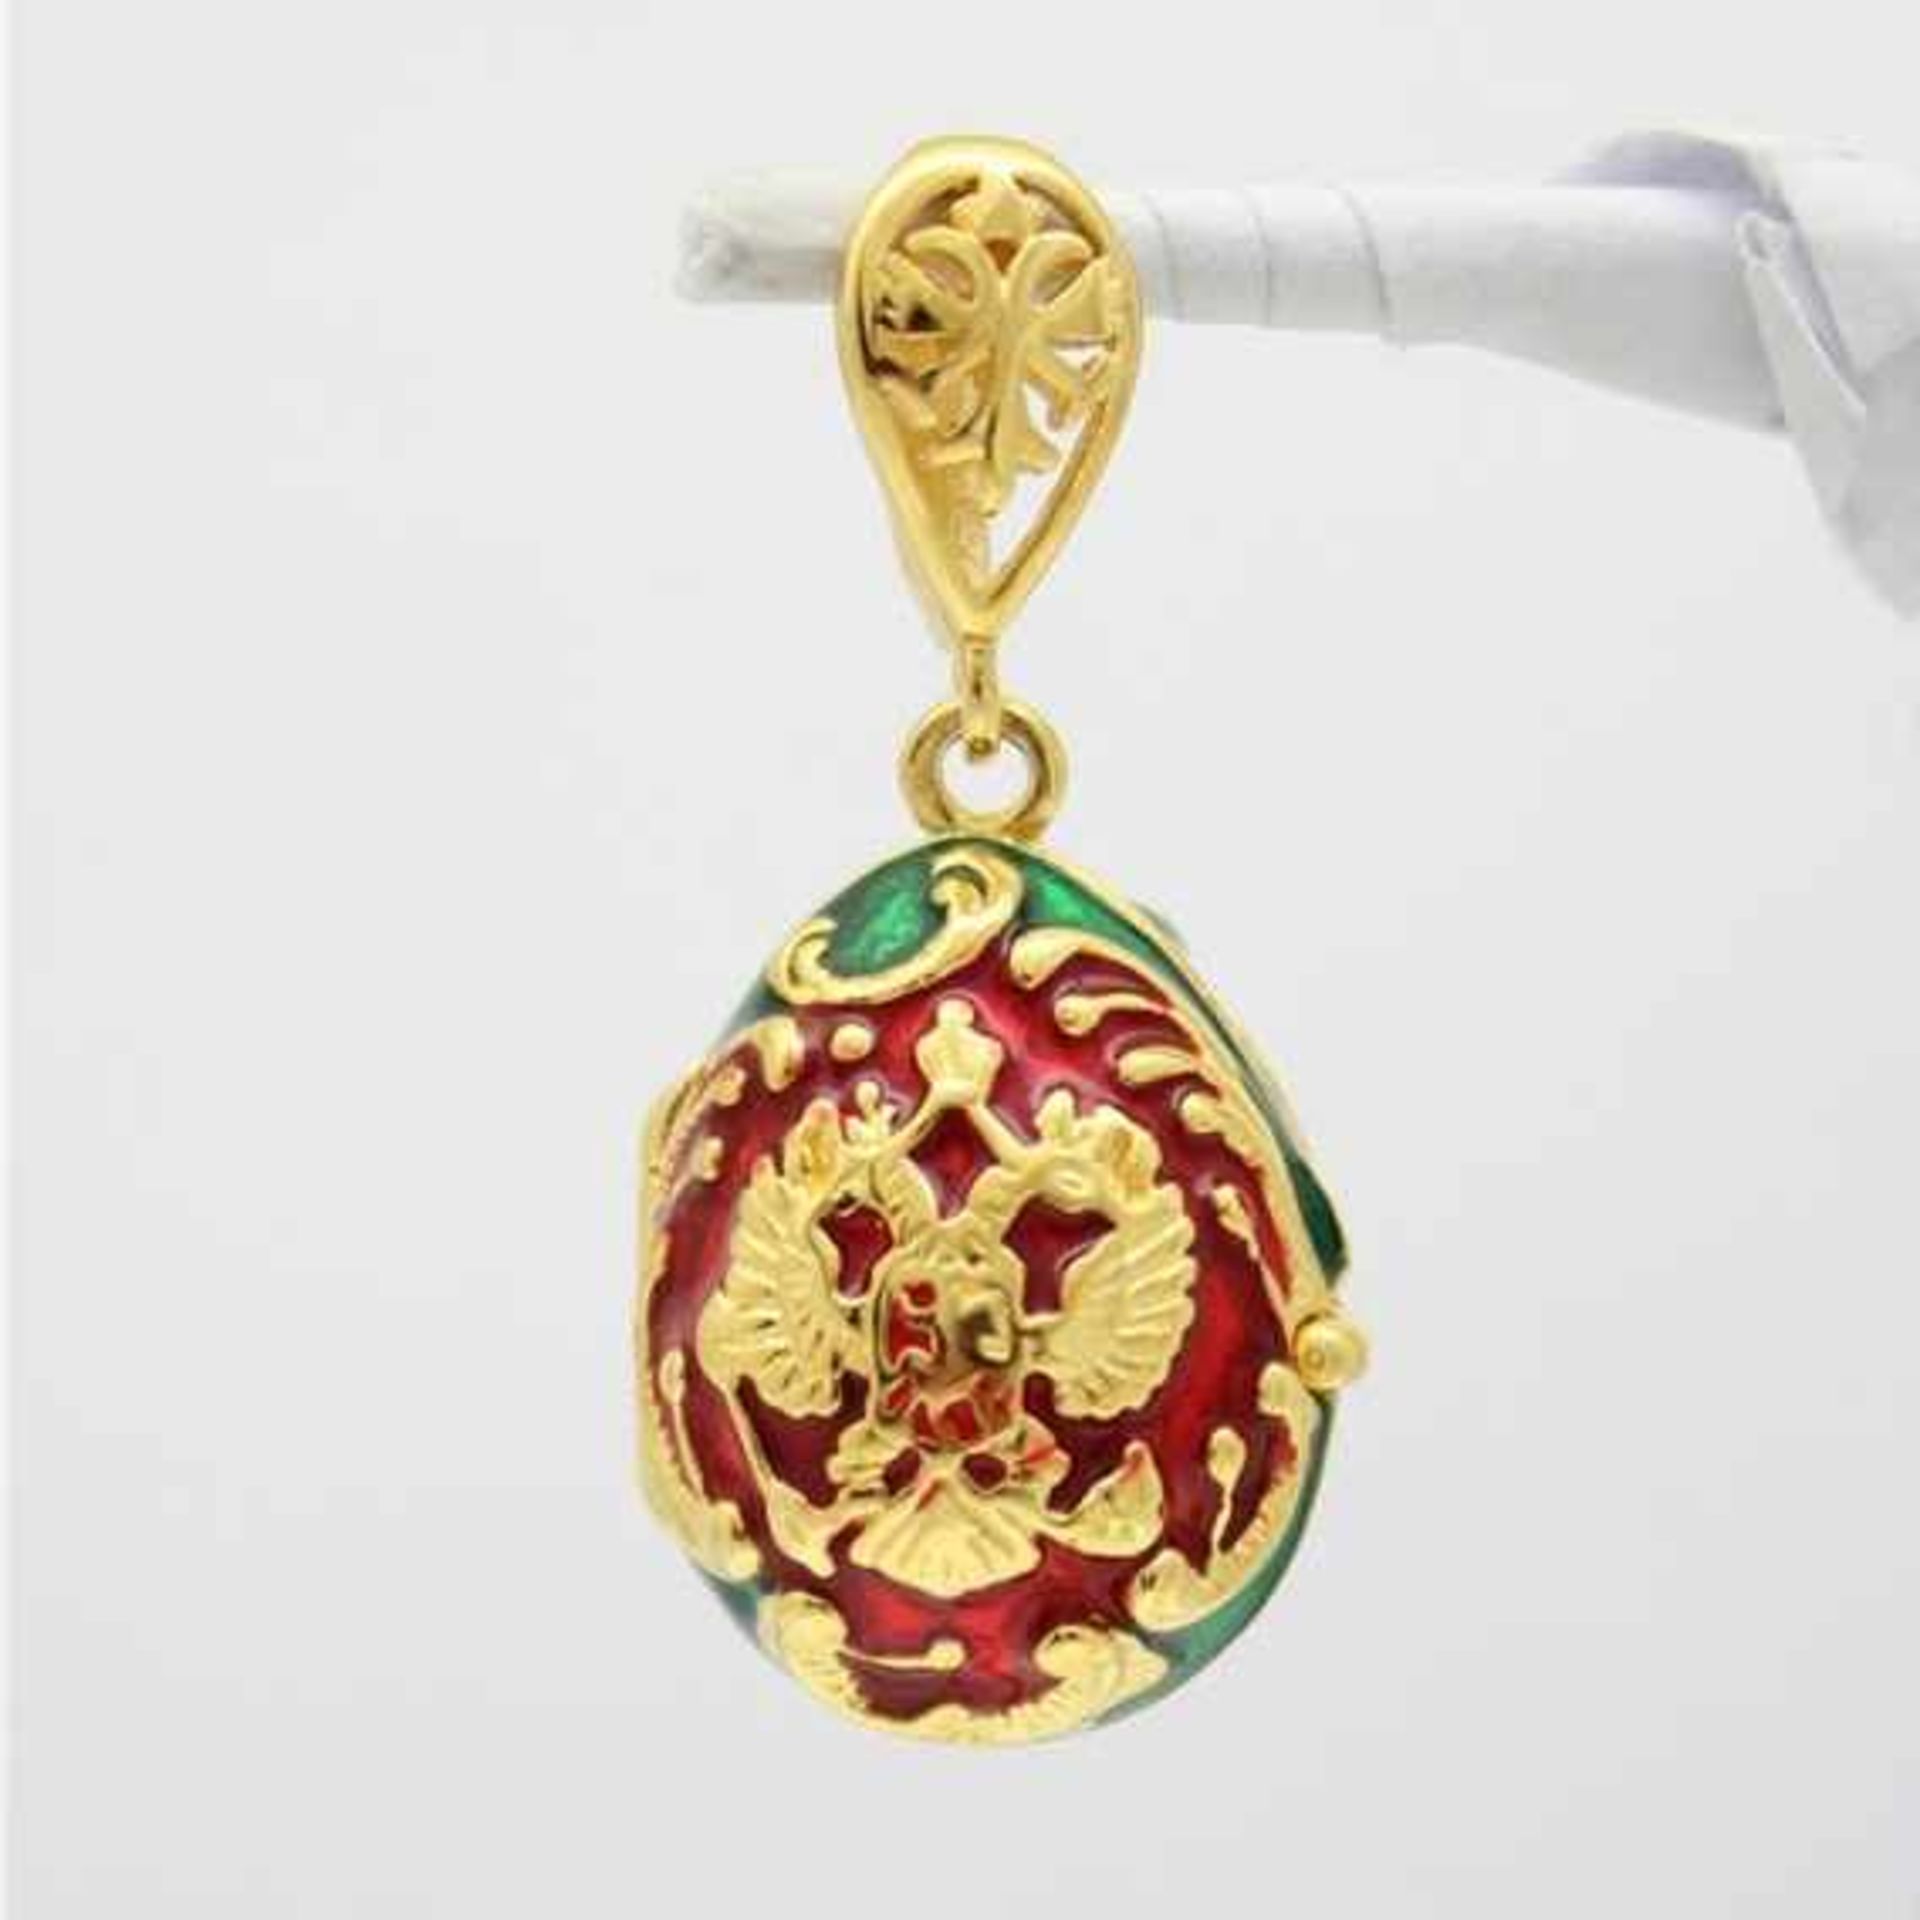 Rotes Ei mit russischem Doppelkopfadler. Kettenanhänger in russischem Faberge-Stil. 925 Sterling